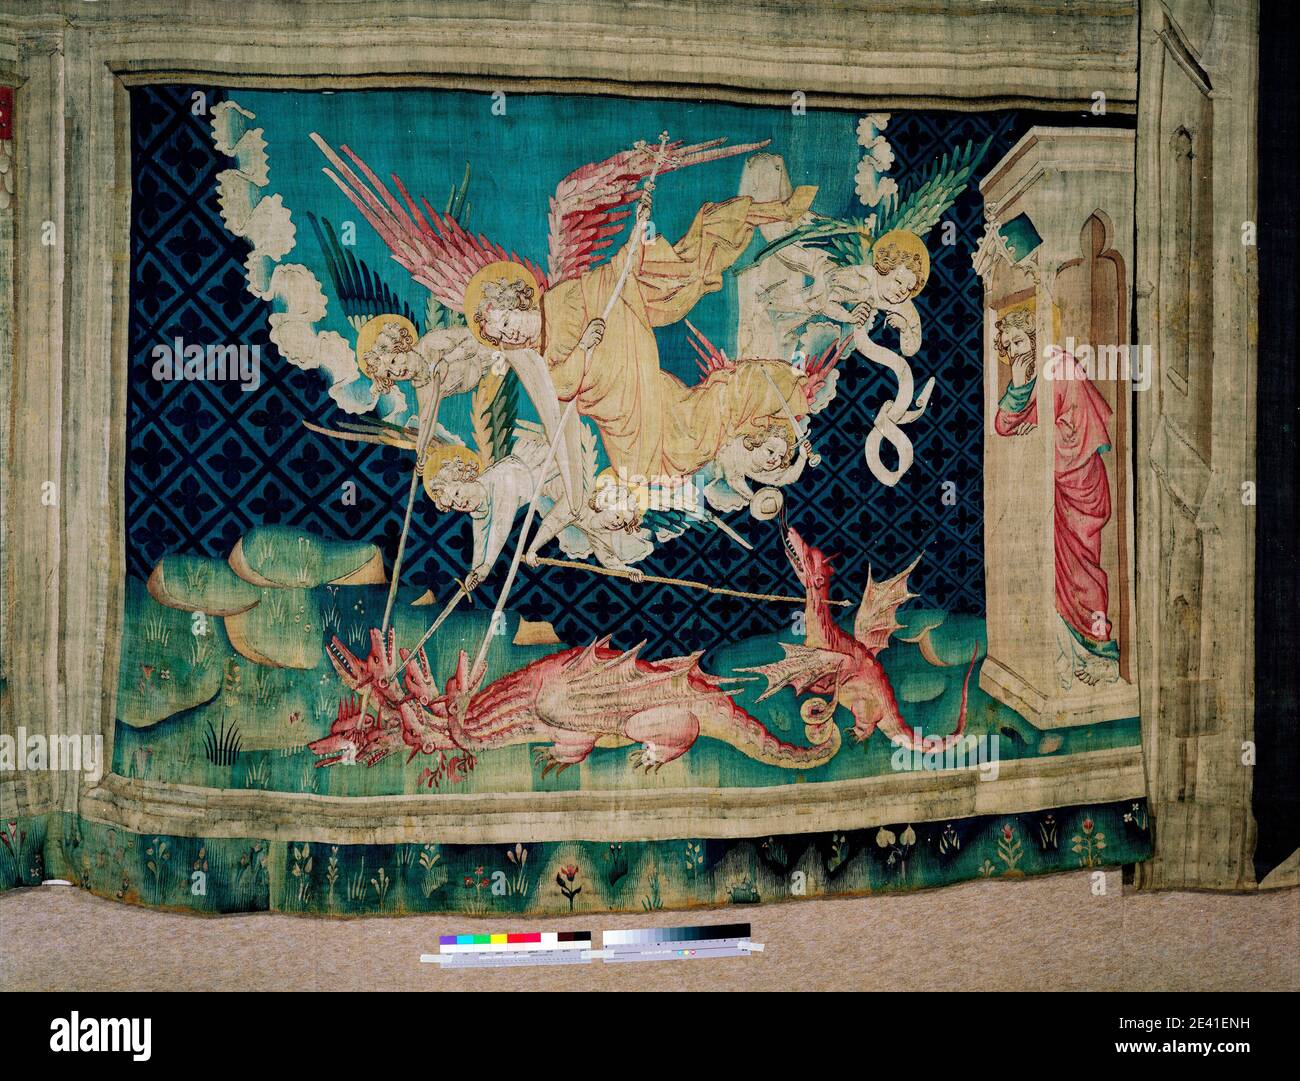 La aventure de l'Apocalypse d'Angers, Saint Michel combat le dragon (1,71 x 2,50 m), der heilige Michael kämpft mit dem Drachen Banque D'Images